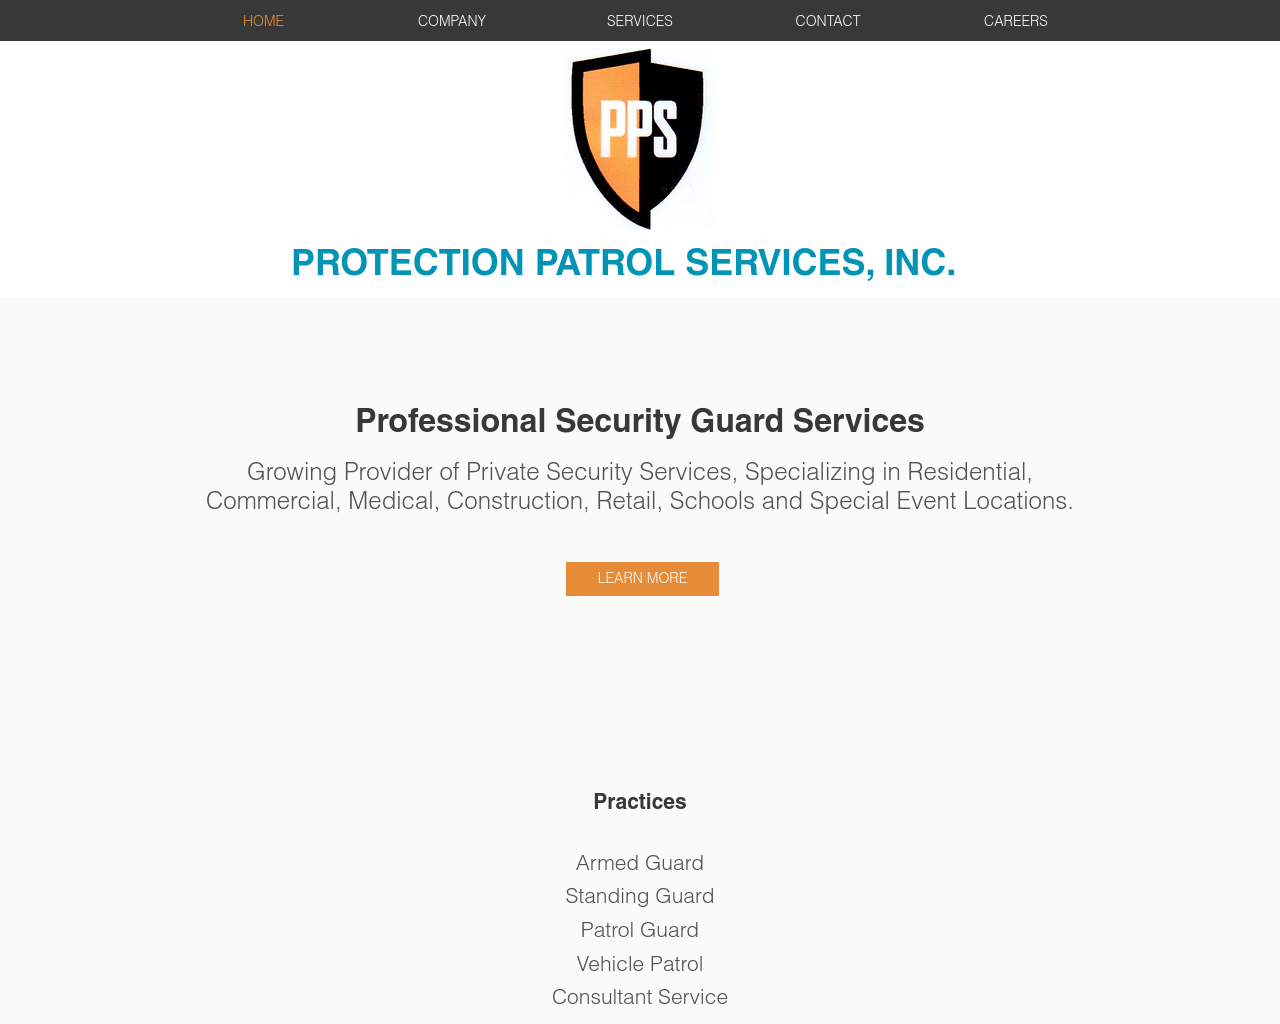 protectionpatrolservices.com